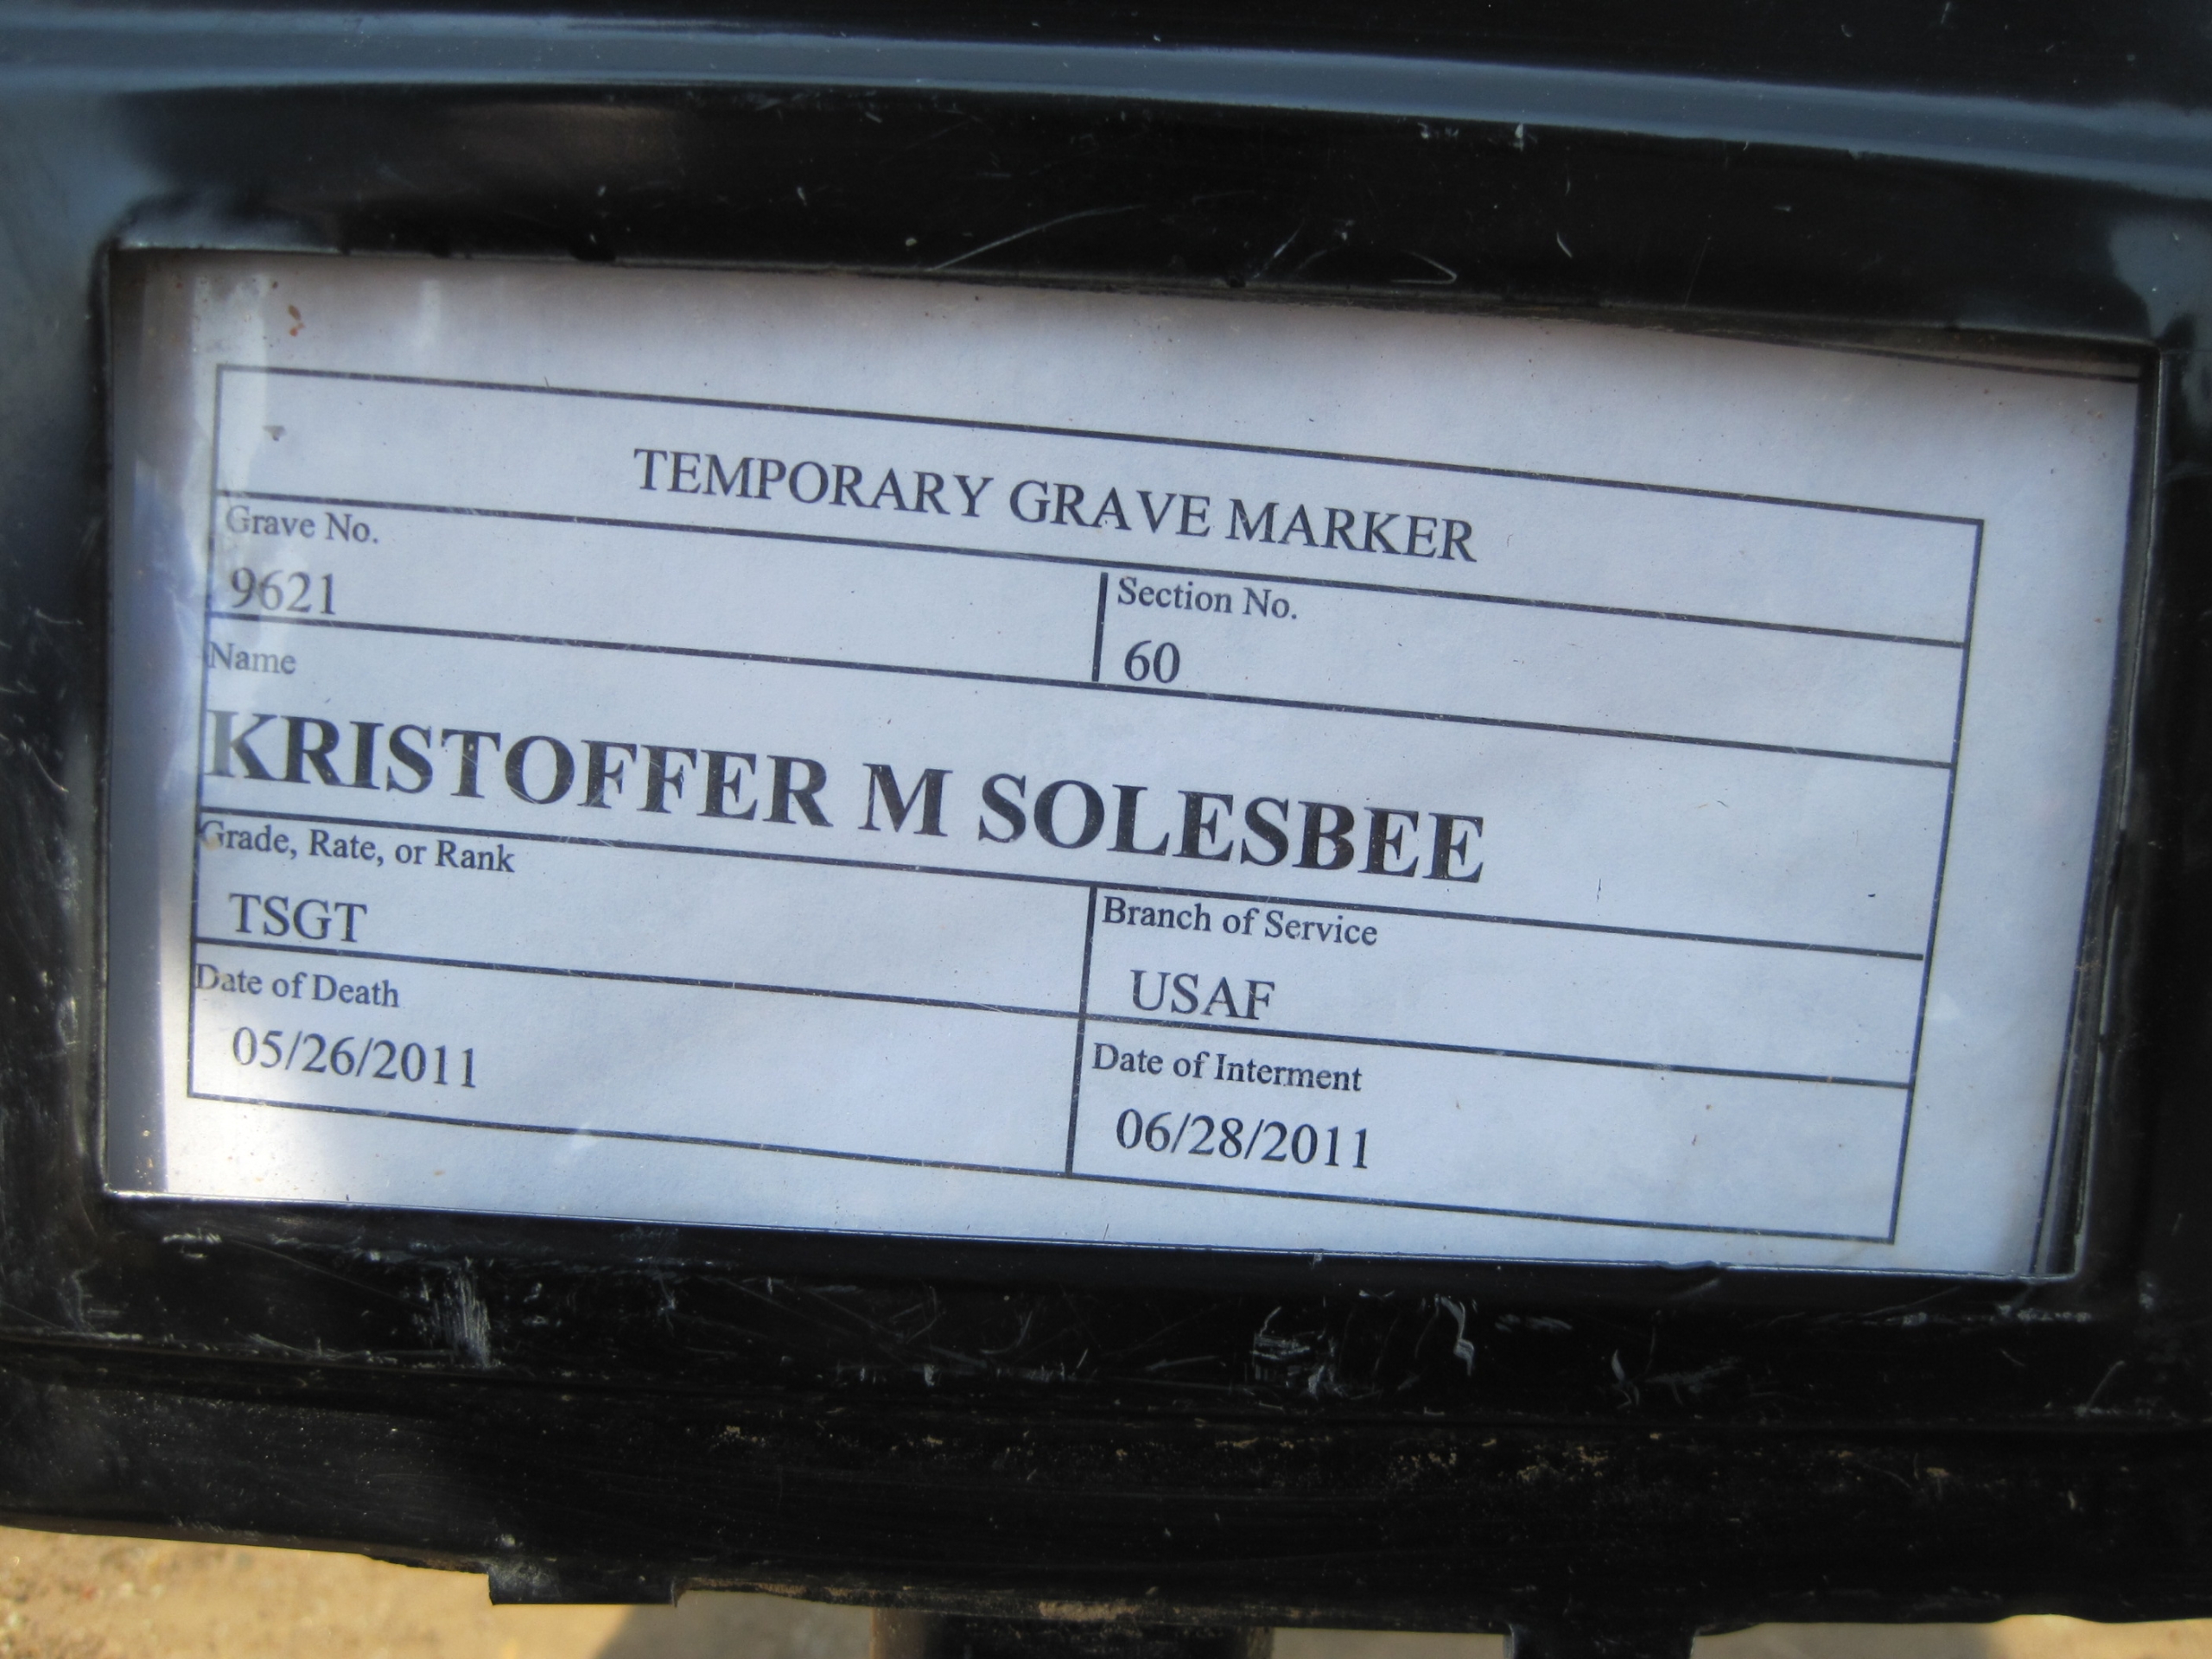 kmsolesbee-gravesite-photo-by-eileen-horan-july-2011-001